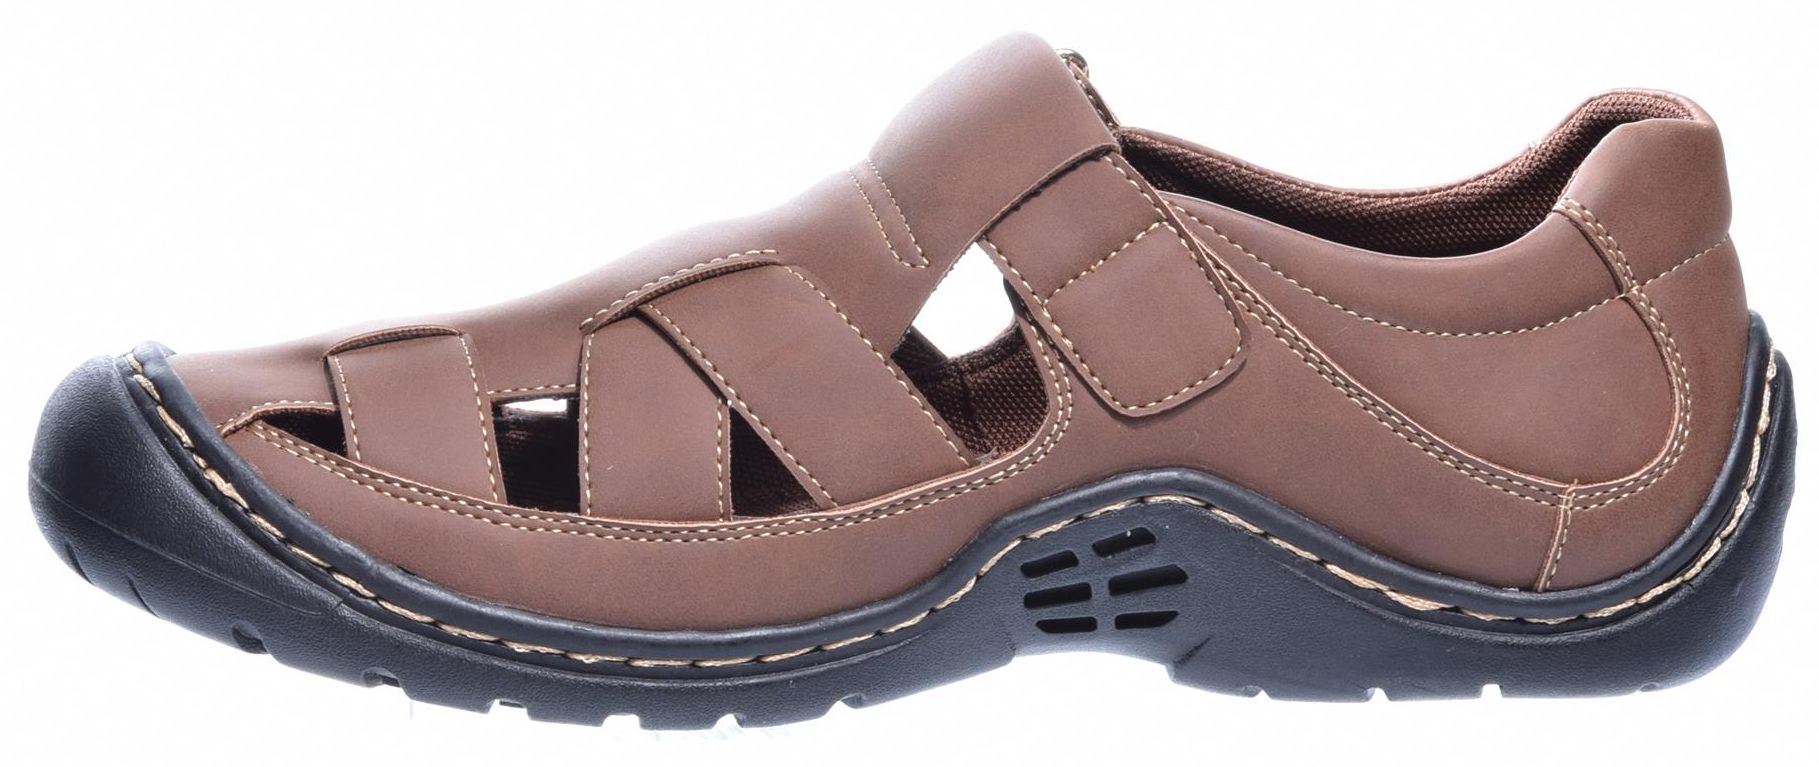 Men's summer shoes